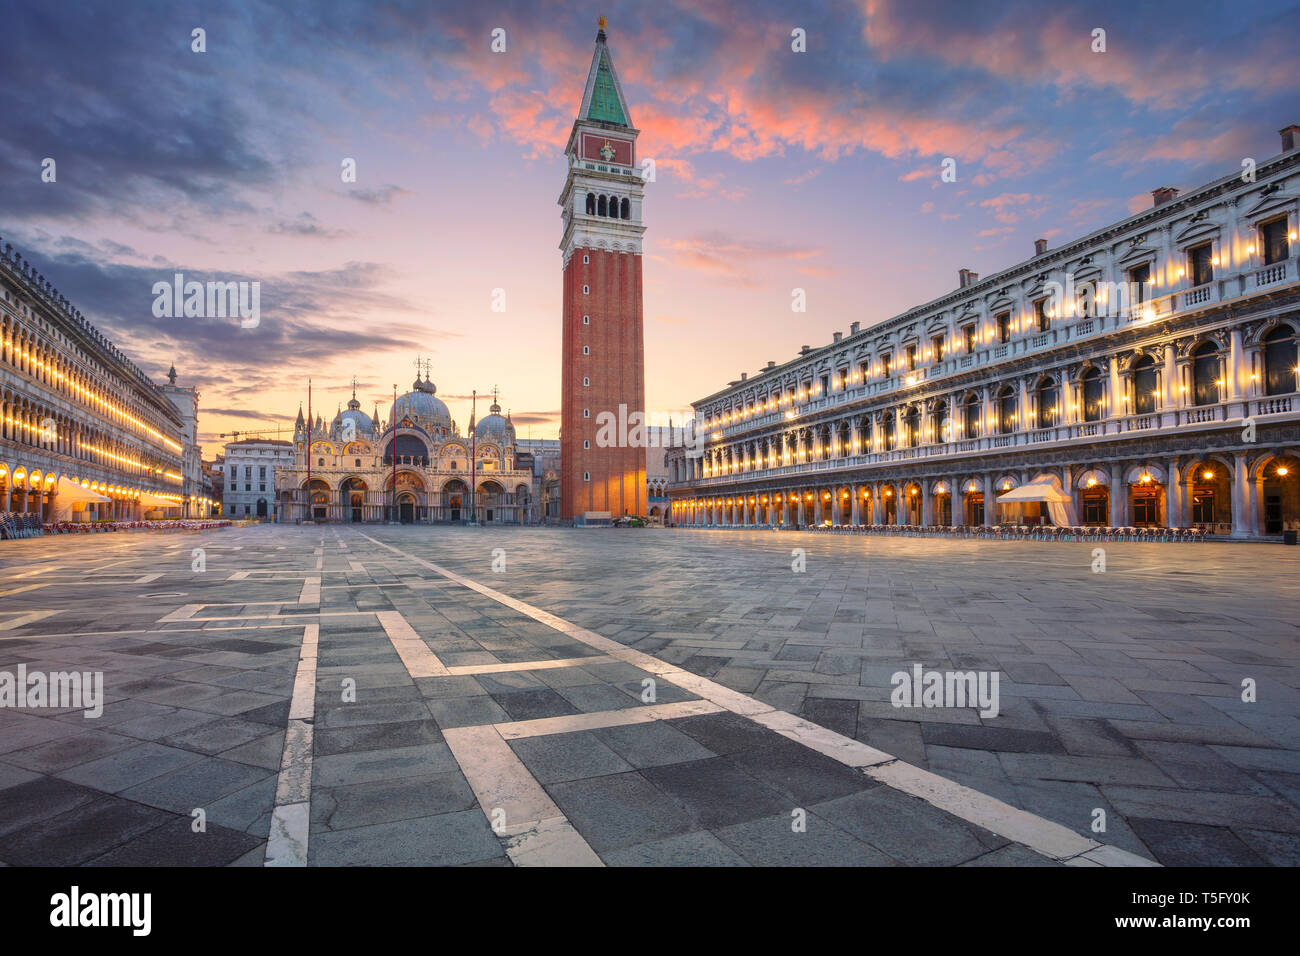 Venise, Italie. Cityscape image de la place Saint Marc à Venise, Italie pendant le lever du soleil. Banque D'Images